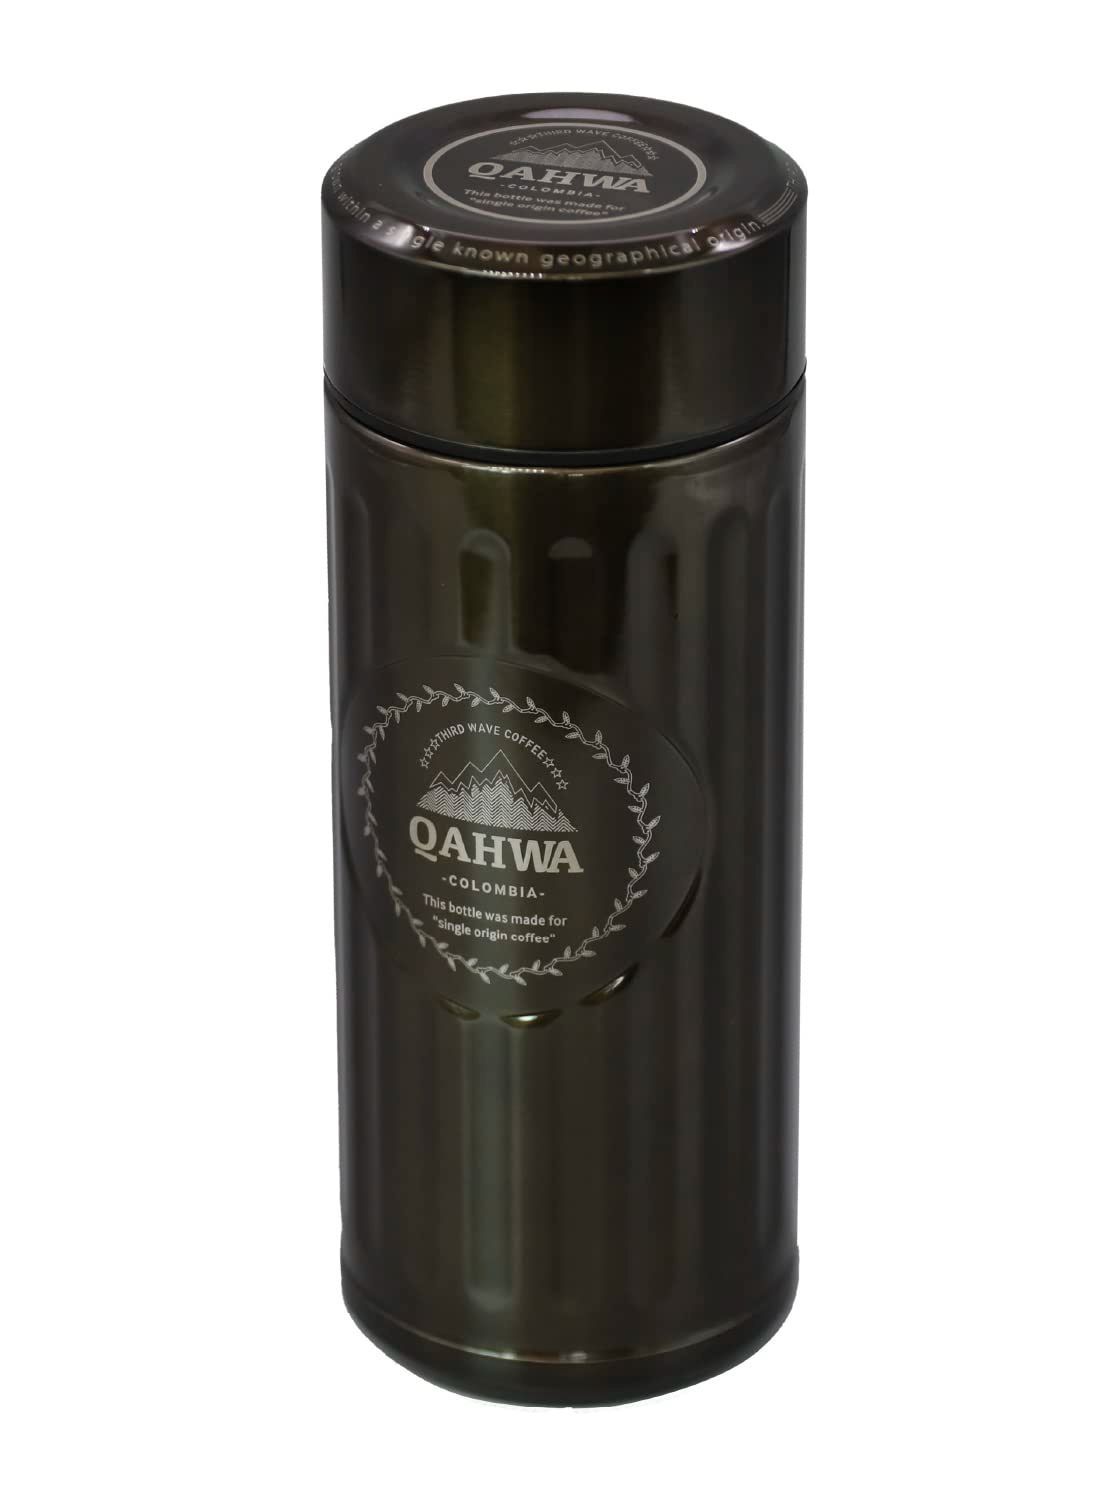 QAHWA(カフア) 珈琲専用ボトル 420ml ブラウン 直飲み 真空断熱2層構造 内面テフロン加工 コーヒーの味と香りを愉しむ カフアコーヒーボトル  シービージャパン